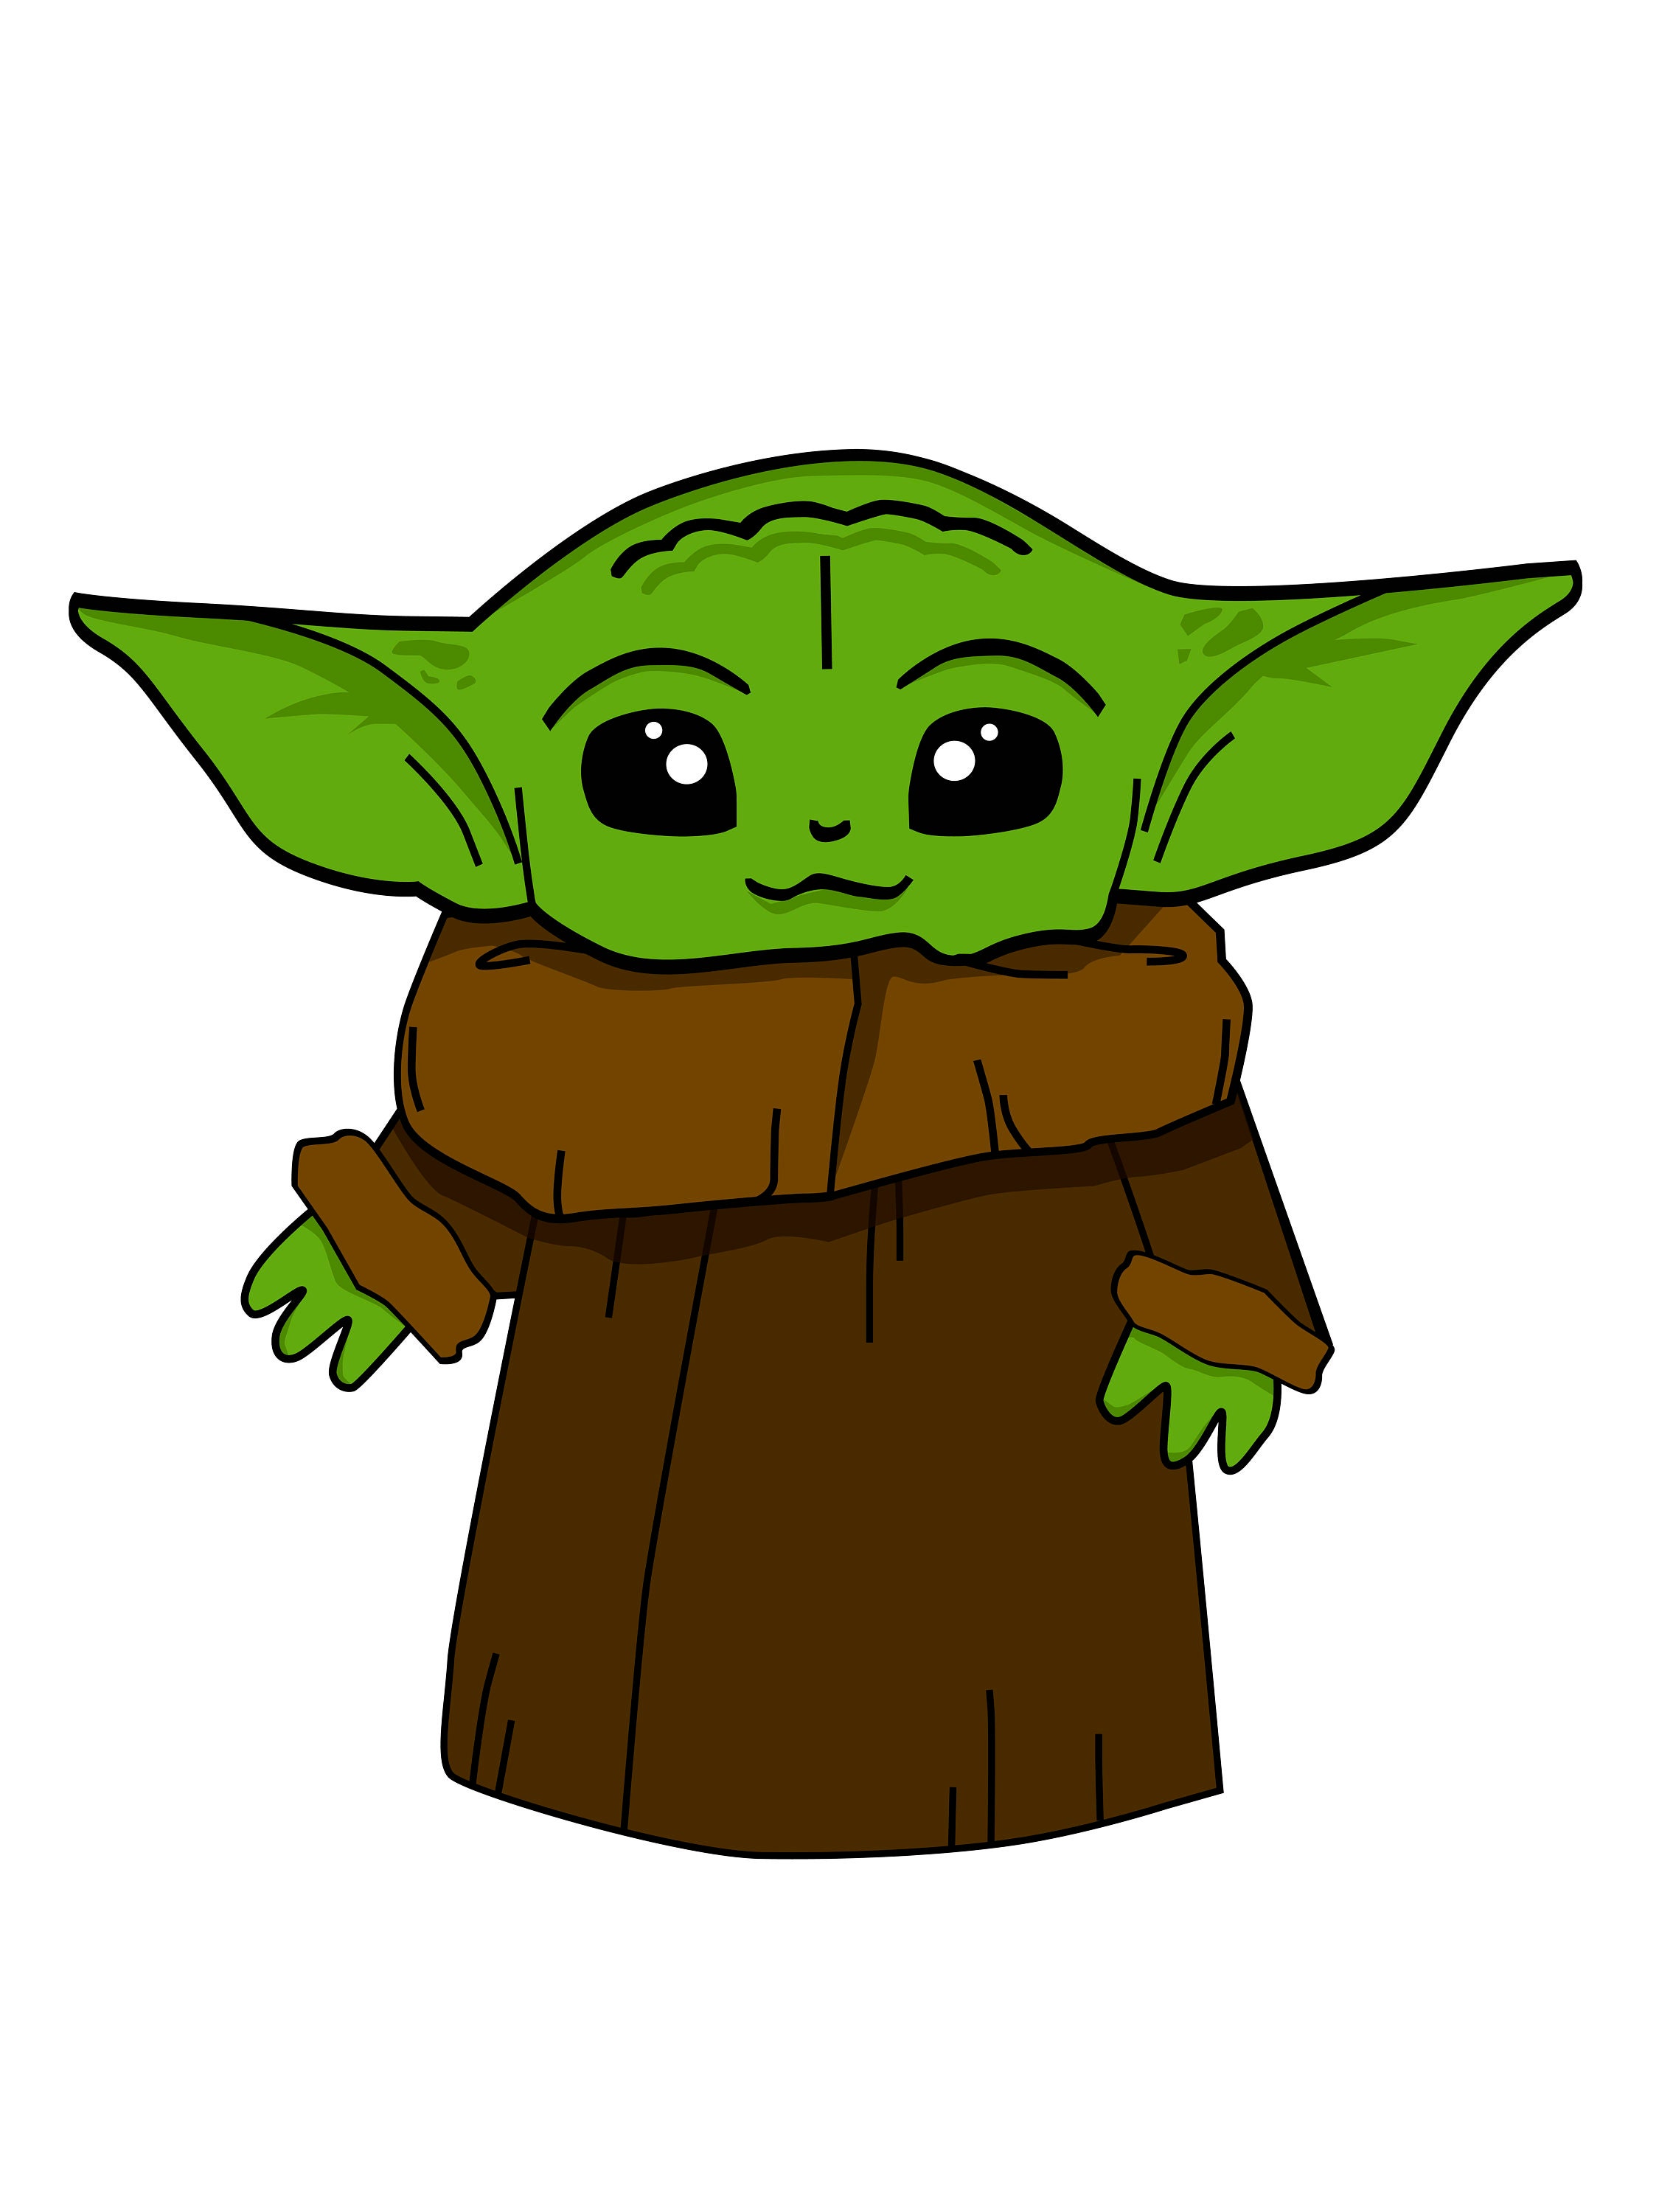 Baby Yoda Birthday SVG